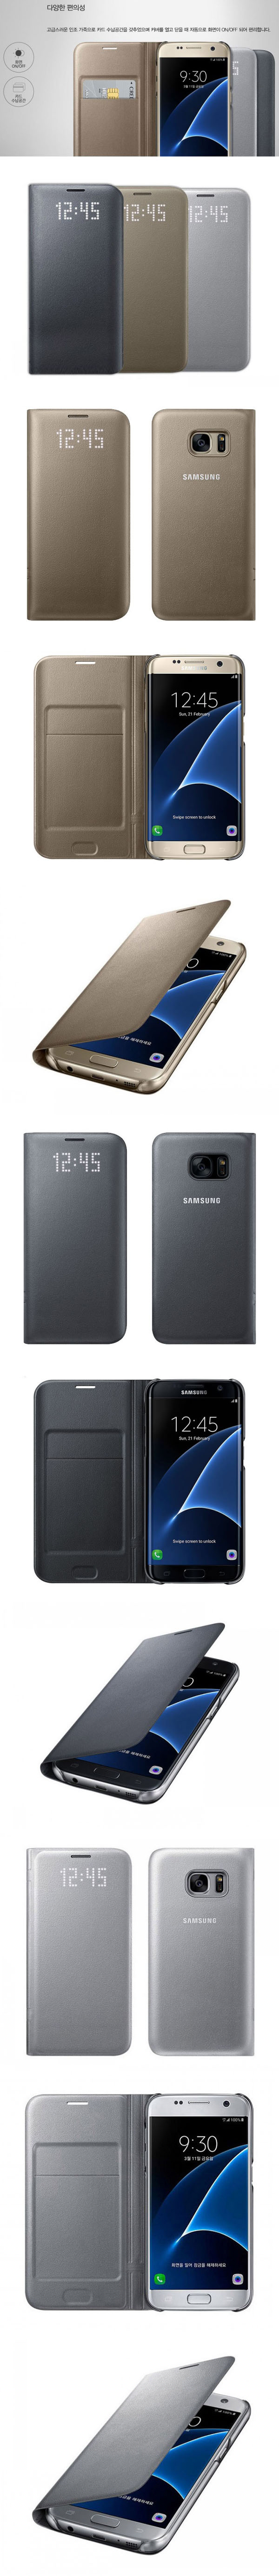 Bao da Galaxy S7 Edge LED View Cover chính hãng (Full Box) 33